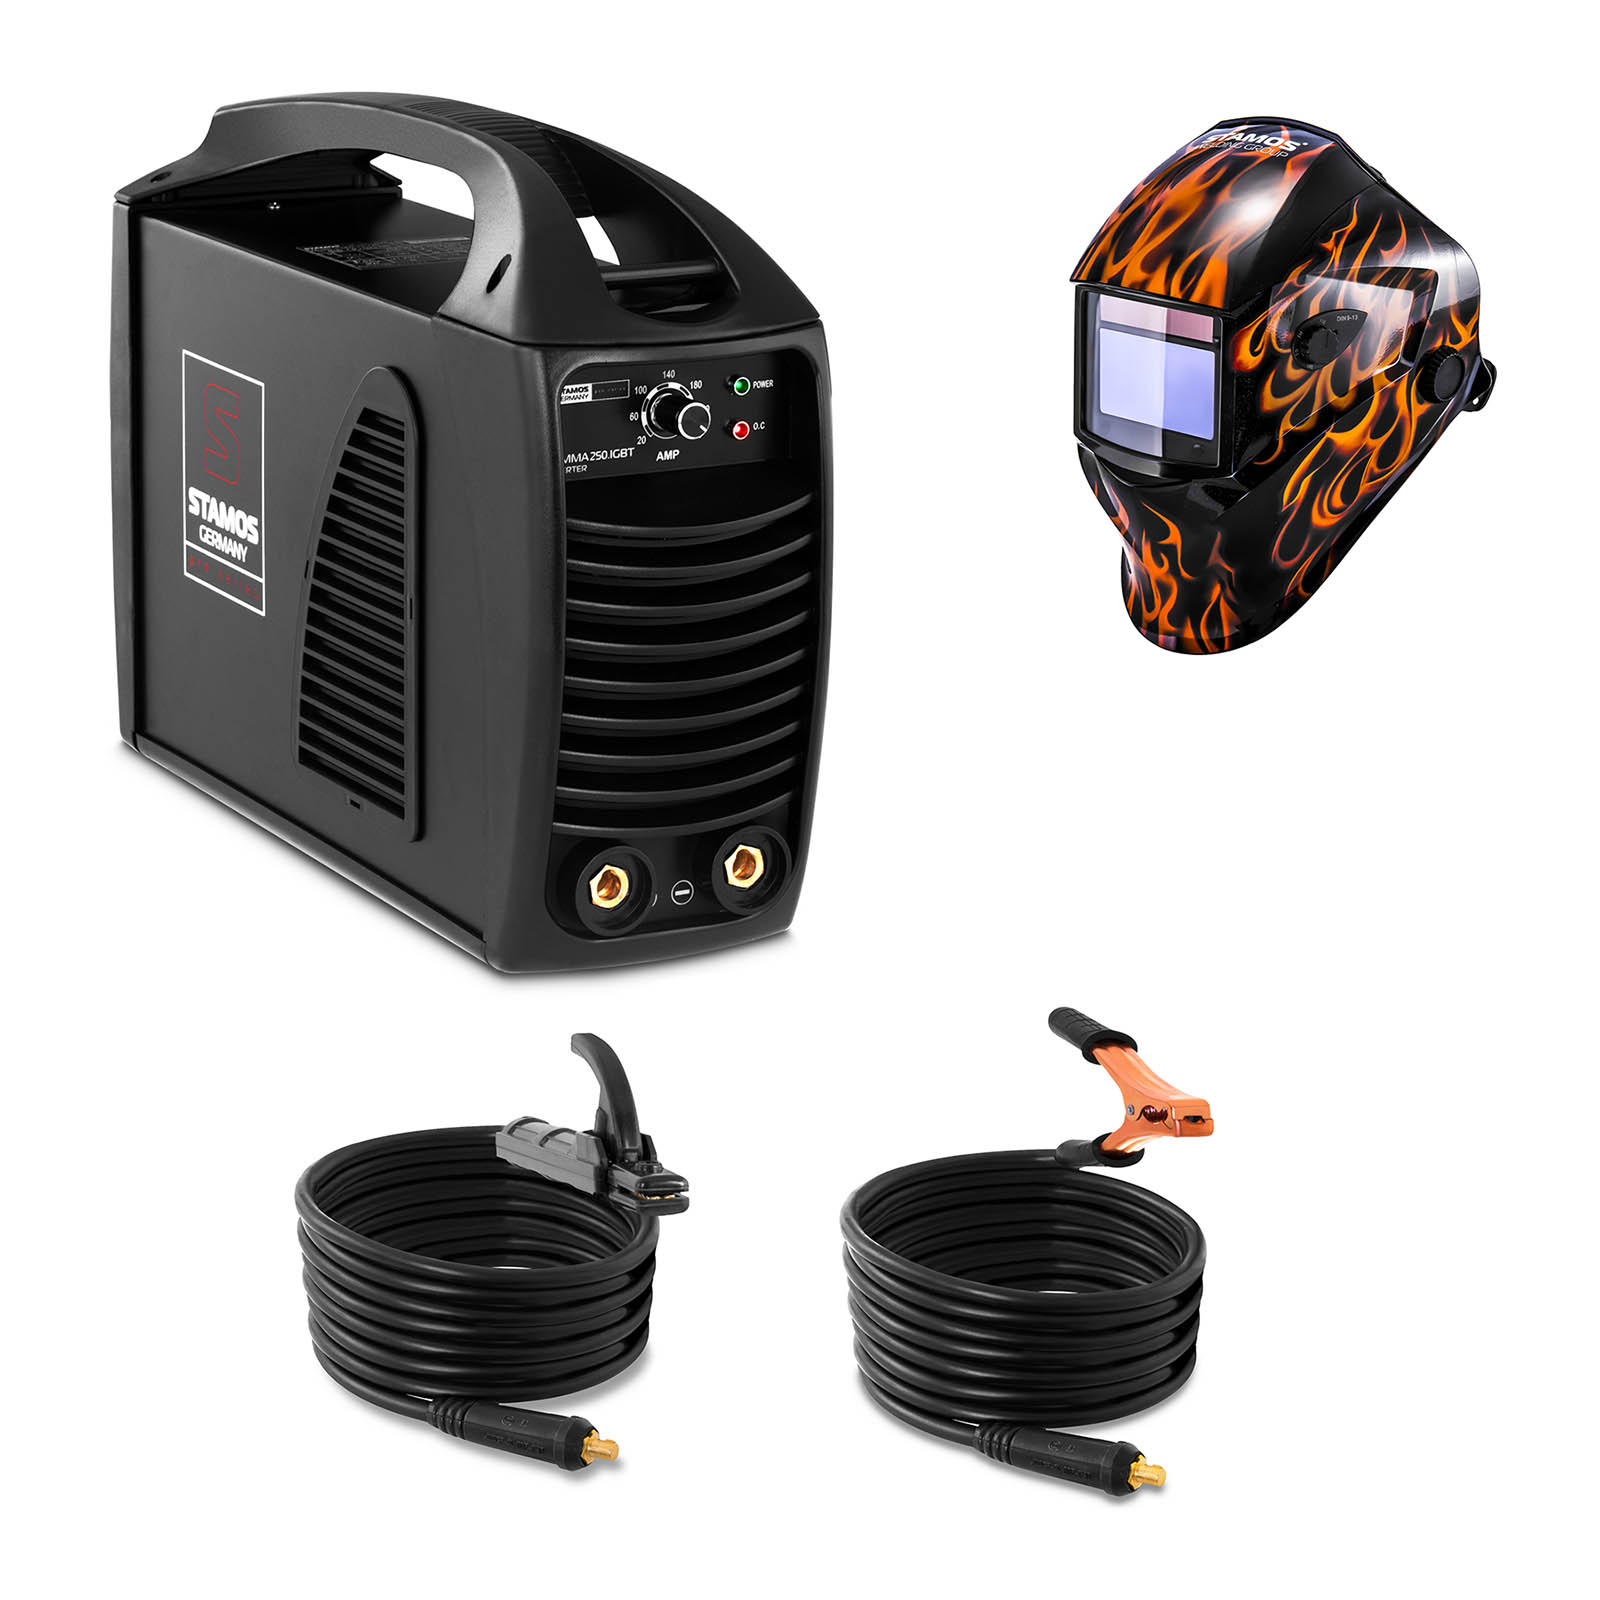 Svařovací set  Elektrodová svářečka - 250 A - Hot Start - IGBT + Svářecí helma - Firestarter 500 - ADVANCED SERIES